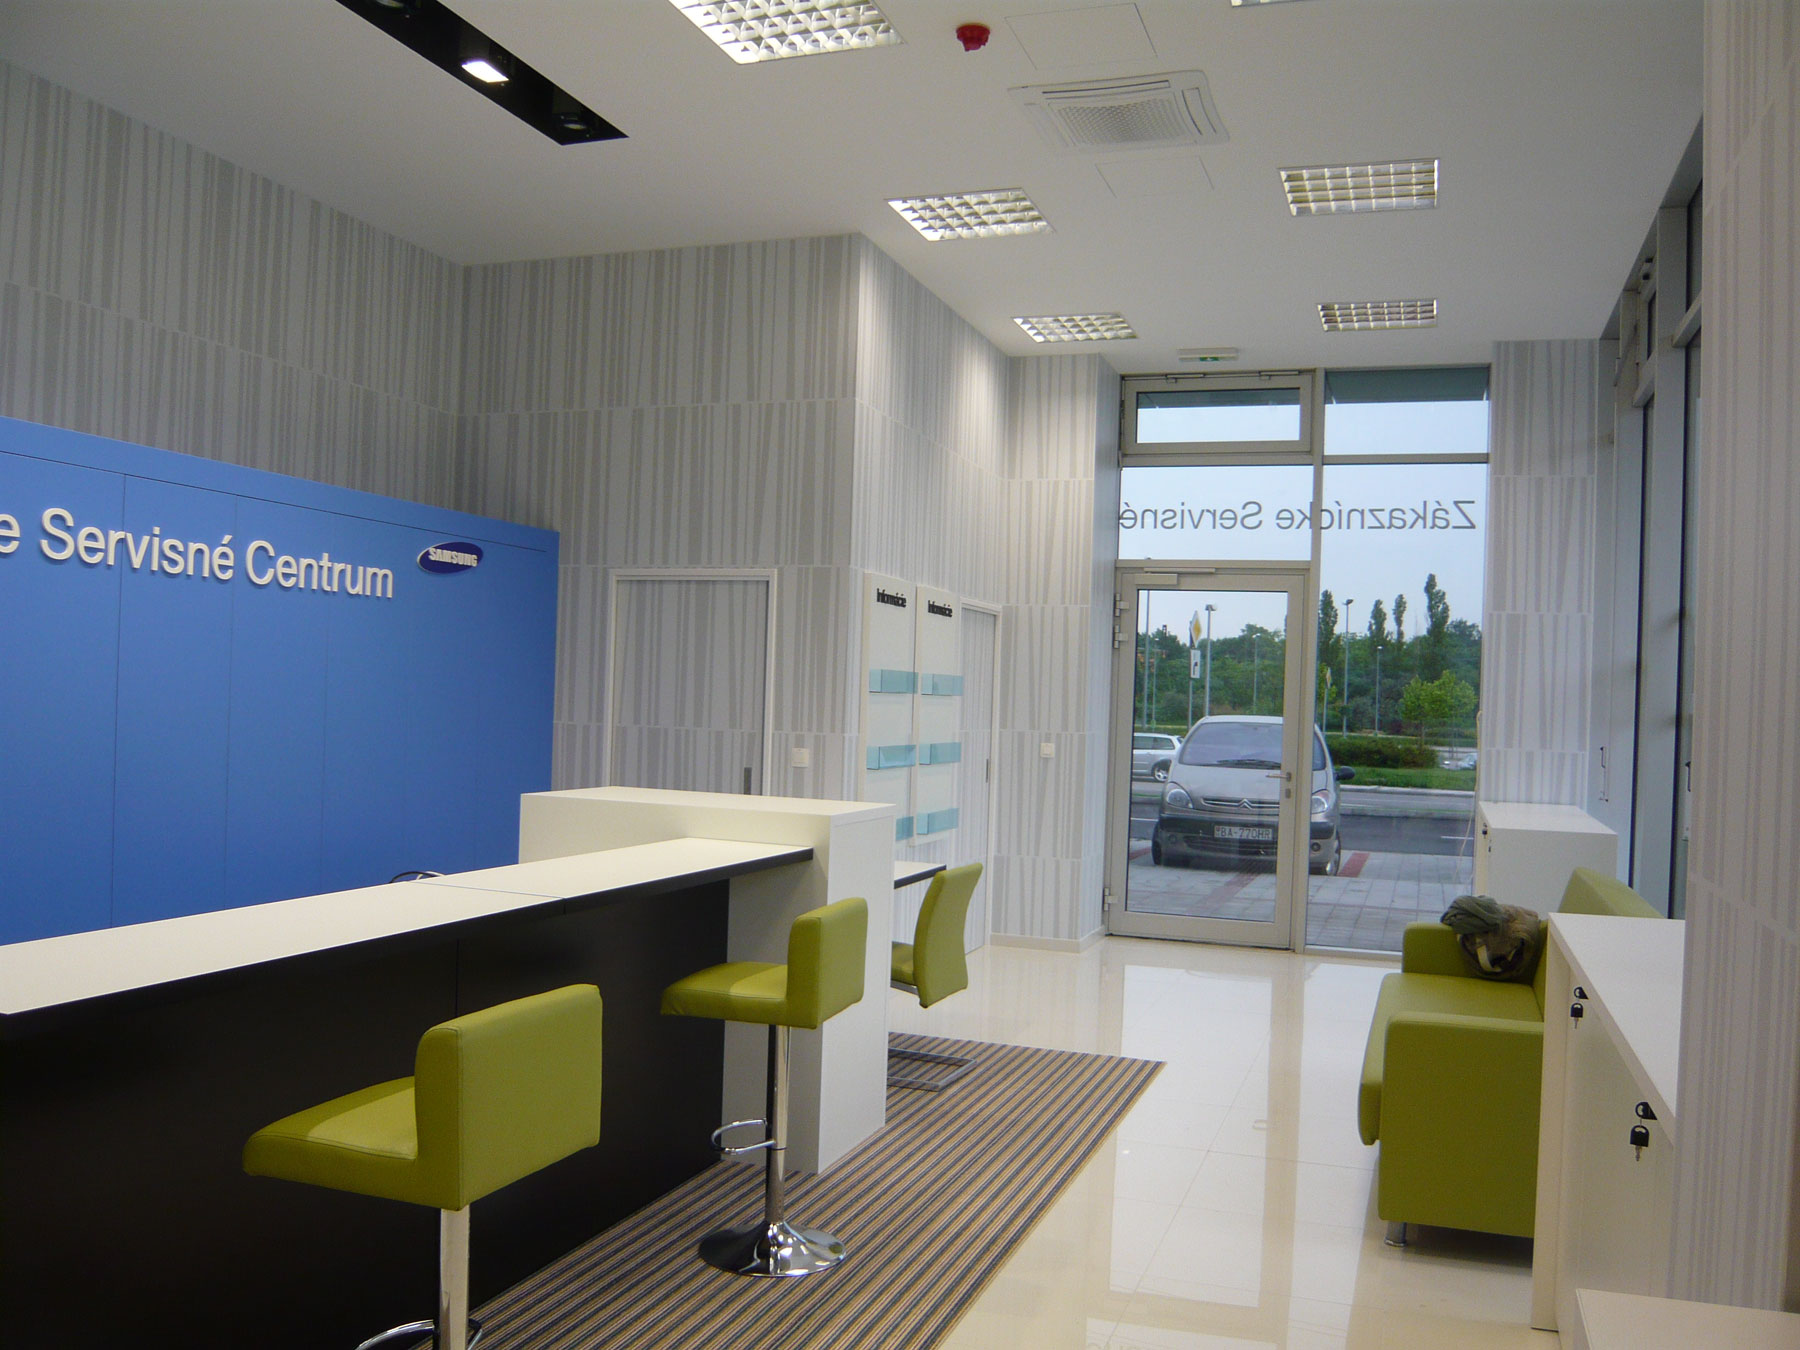 Servisné centrum pre Samsung dostalo svieži dizajn, realizácia prebehla na kľúč.